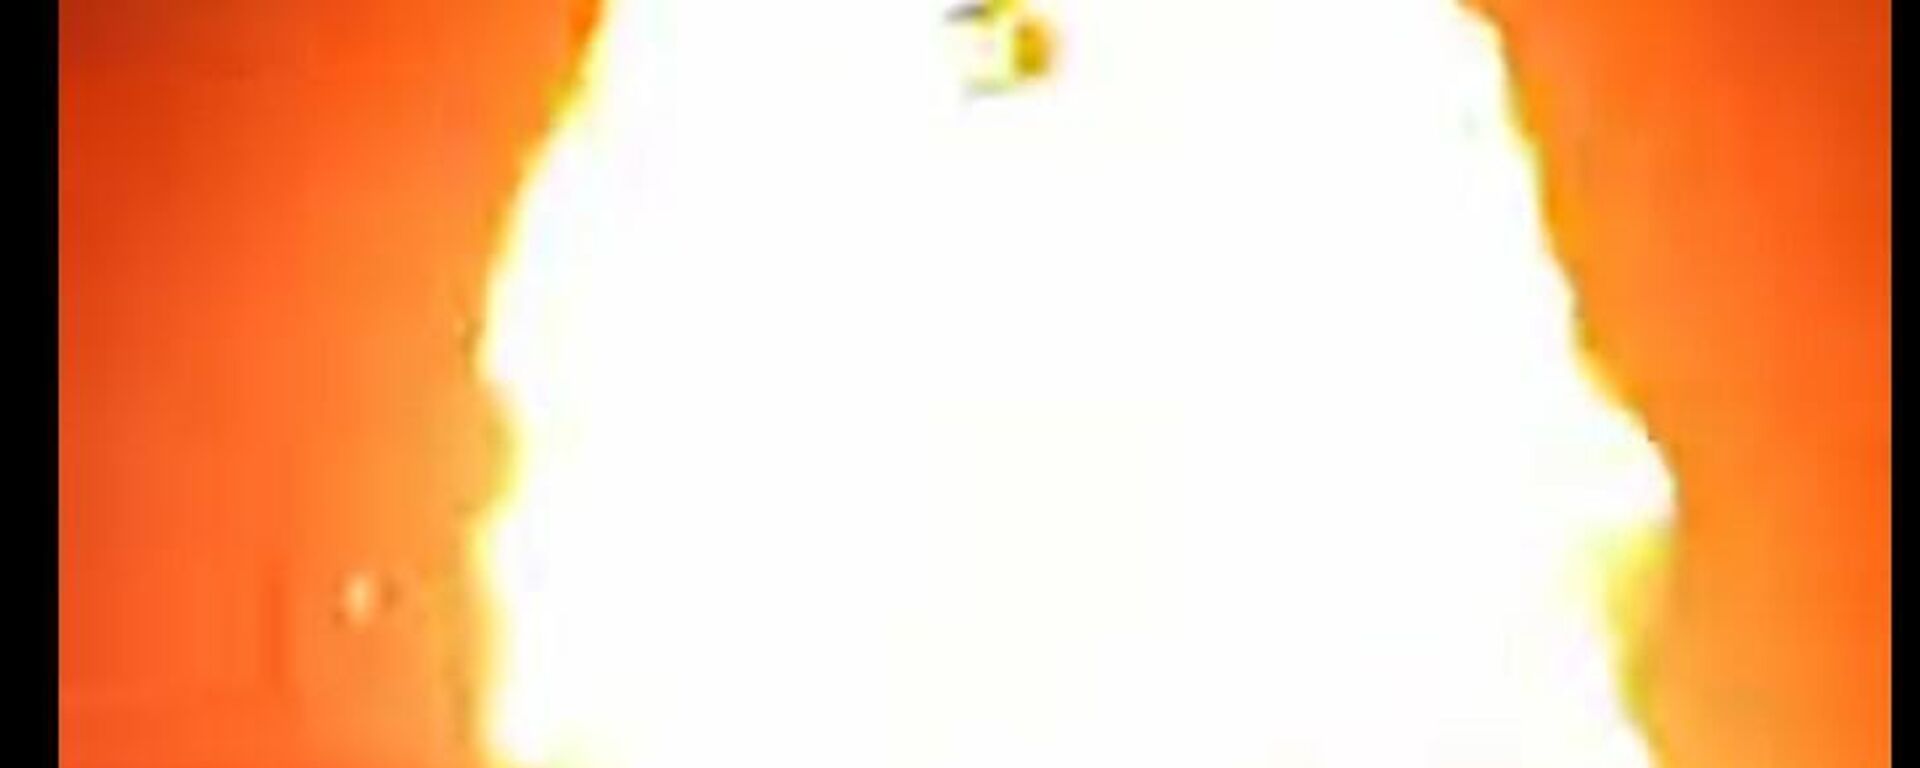 Таркиши нуқтаи фурӯши сӯзишворӣ дар шаҳри Душанбе - Sputnik Тоҷикистон, 1920, 01.05.2021